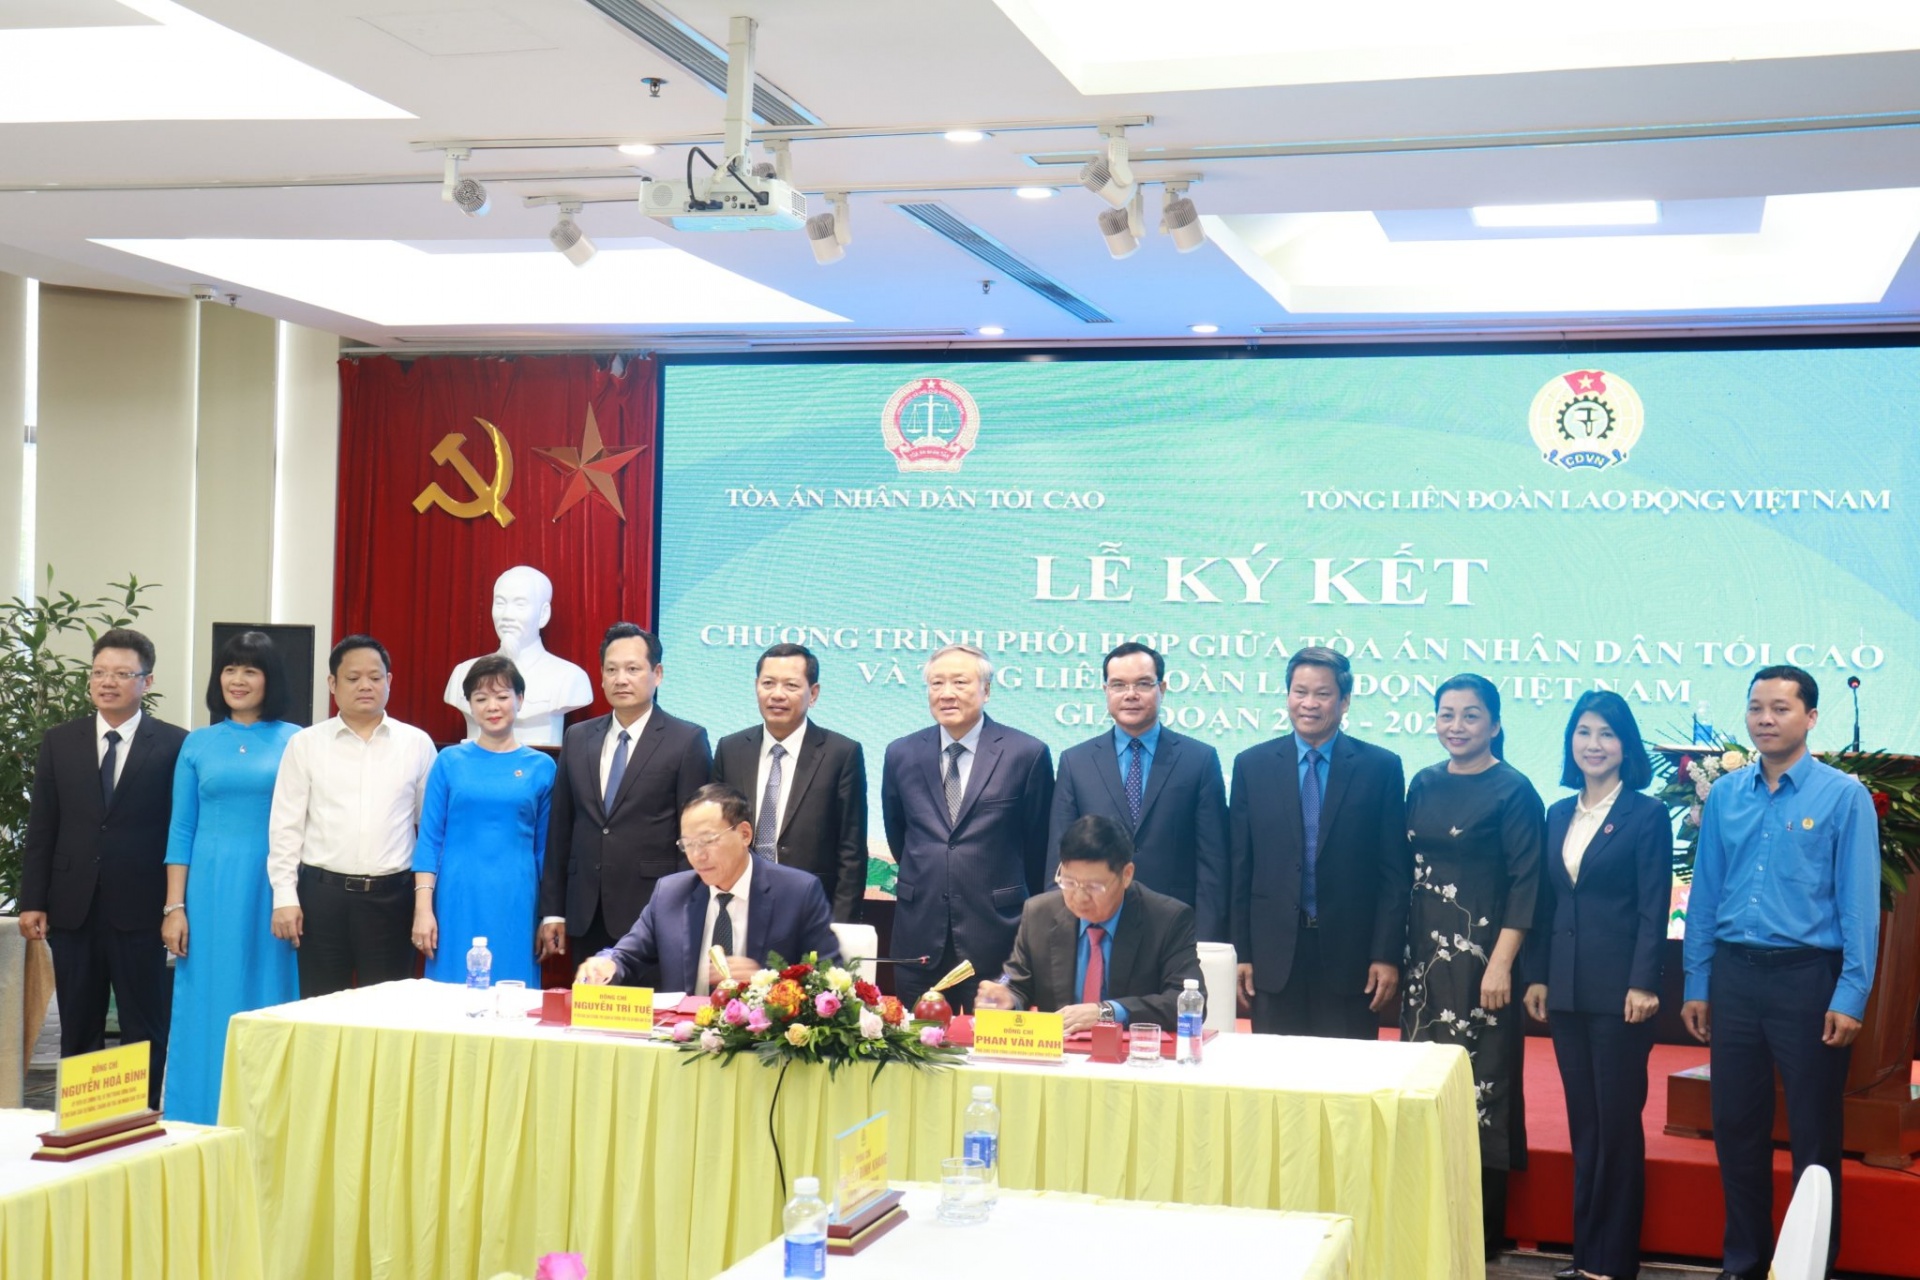 Tổng LĐLĐ Việt Nam và Tòa án Nhân dân tối cao ký kết Chương trình phối hợp công tác